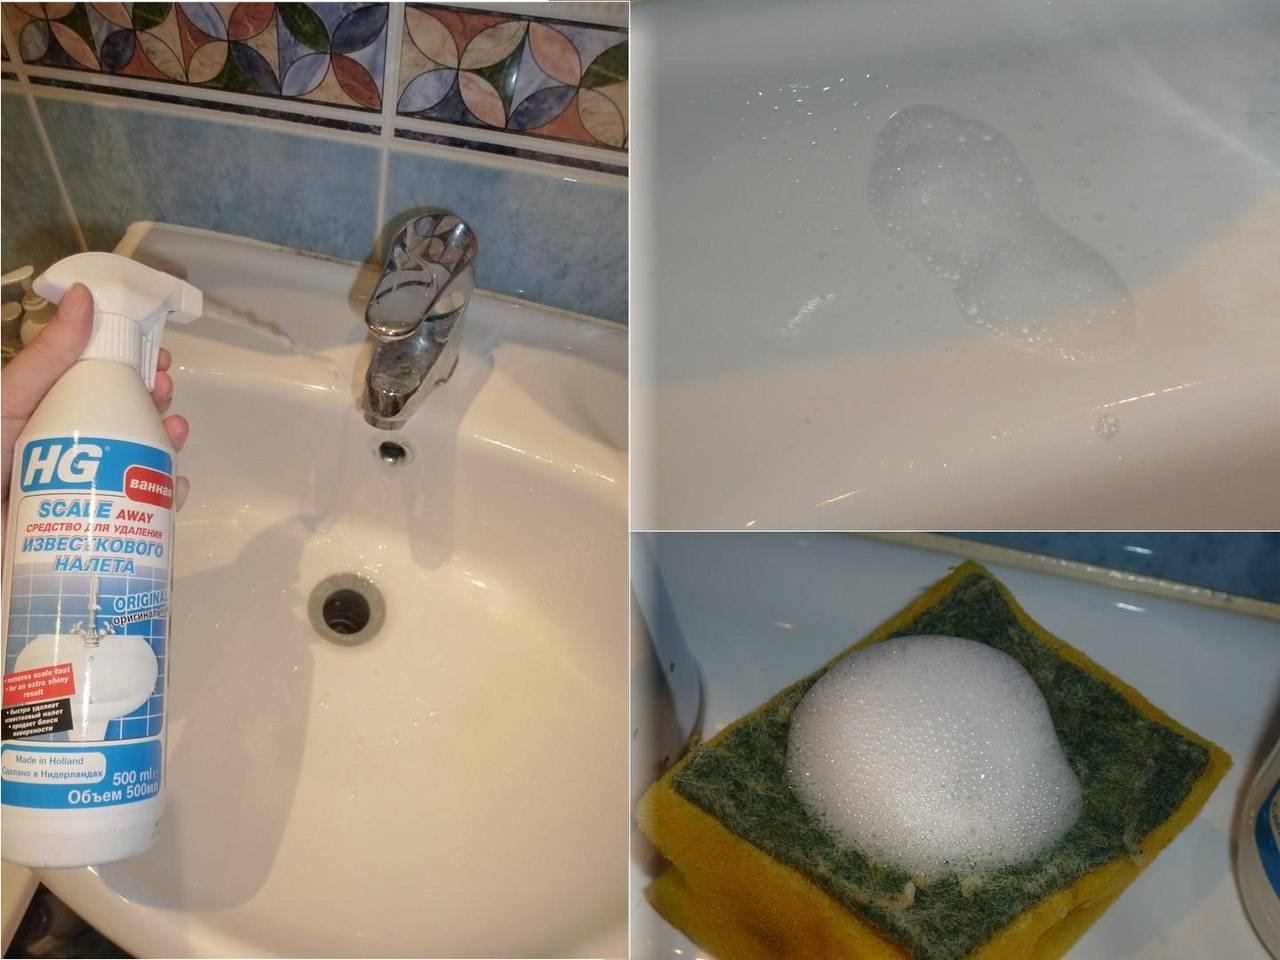 Избавиться от плесени в ванной помогут агрессивные средства Плесень опасна для человека и необходимо предпринять меры, чтобы ее отчистить